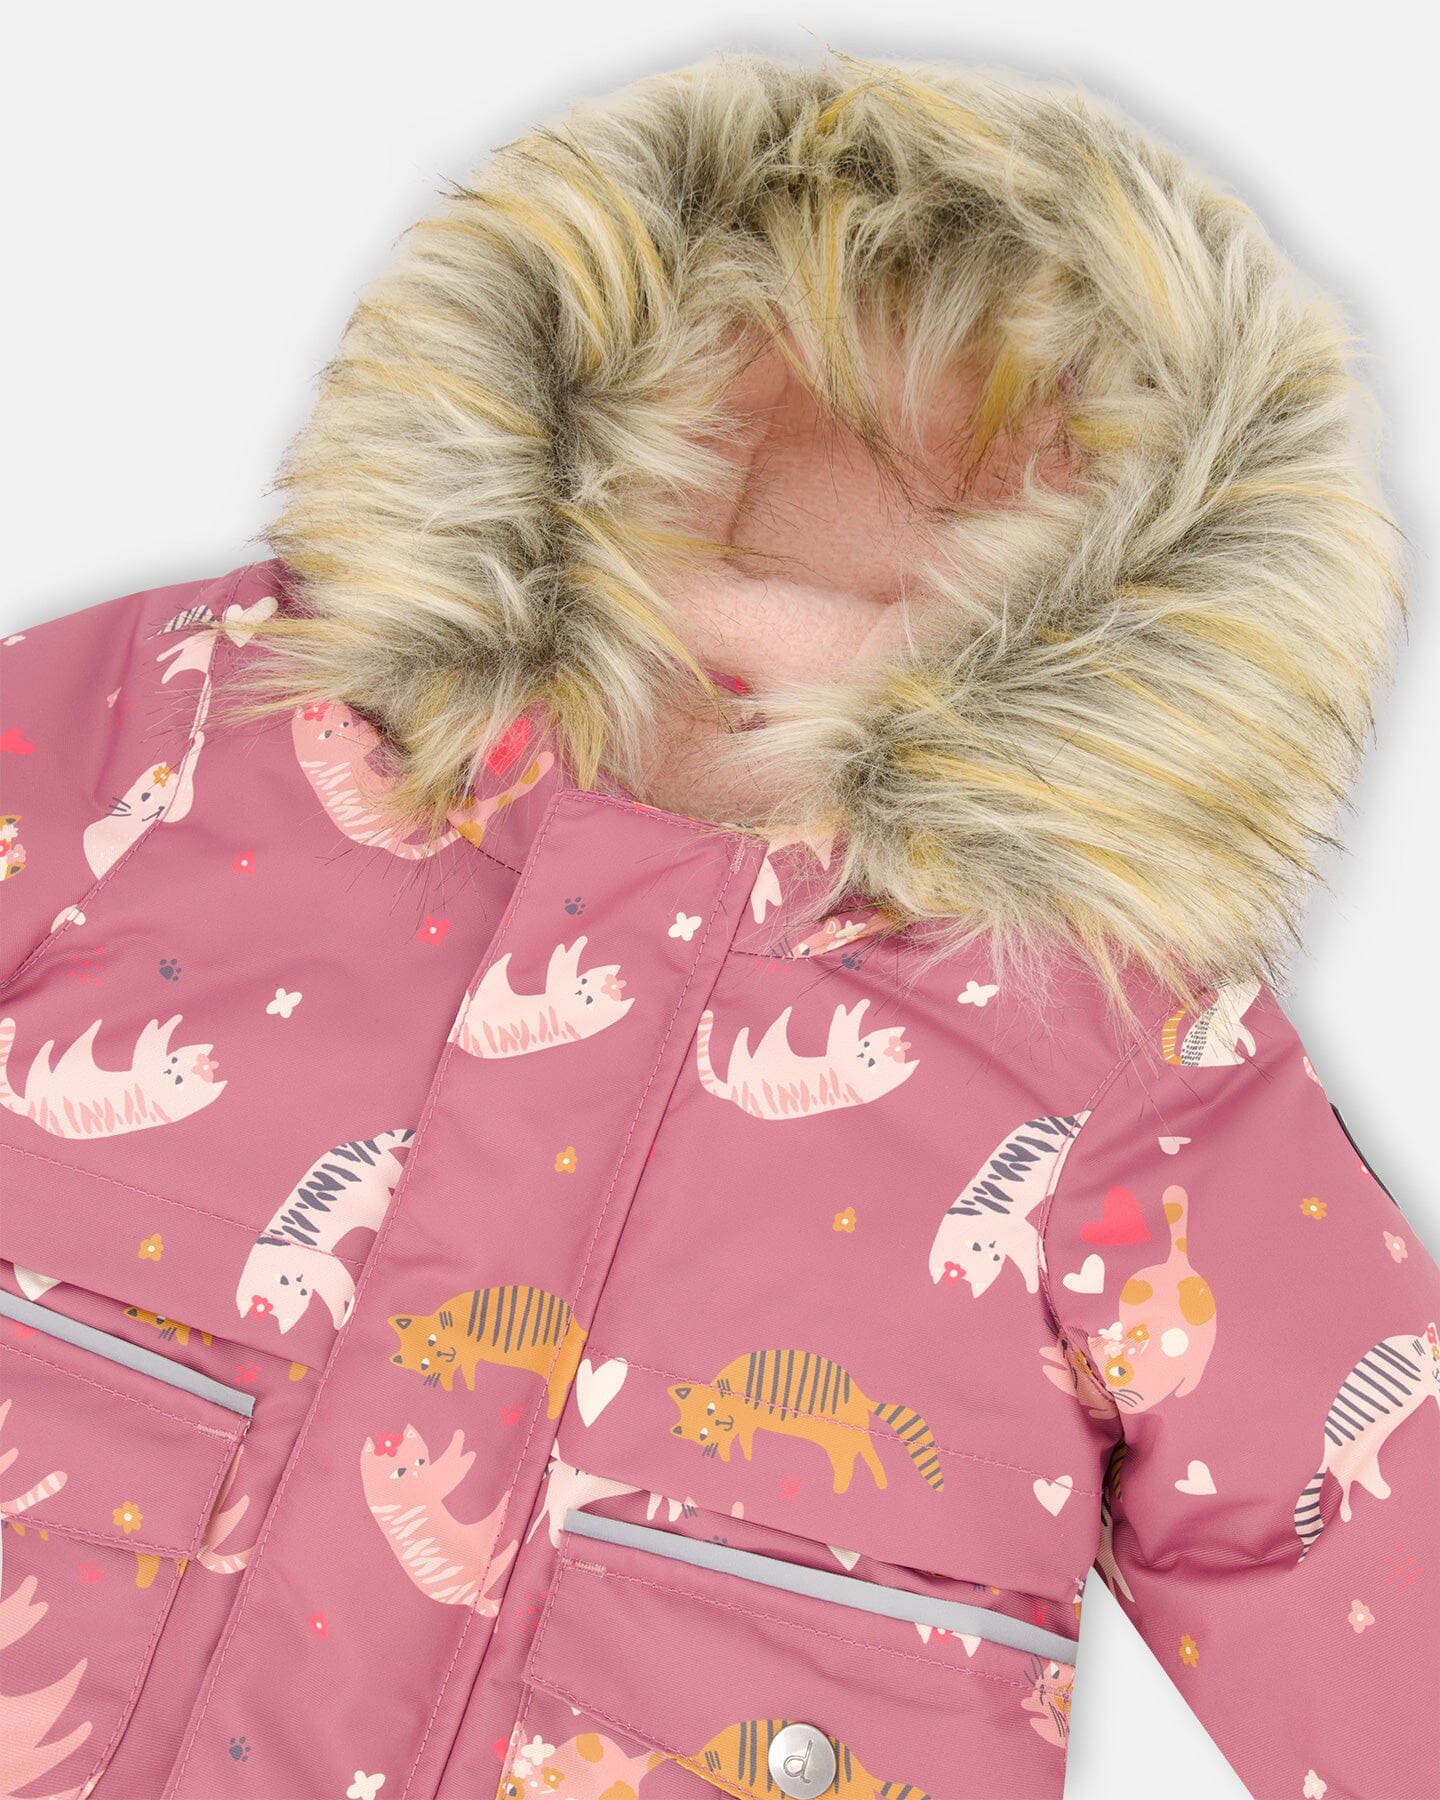 Two Piece Baby Snowsuit Pink With Cat Print Snowsuits Deux par Deux 